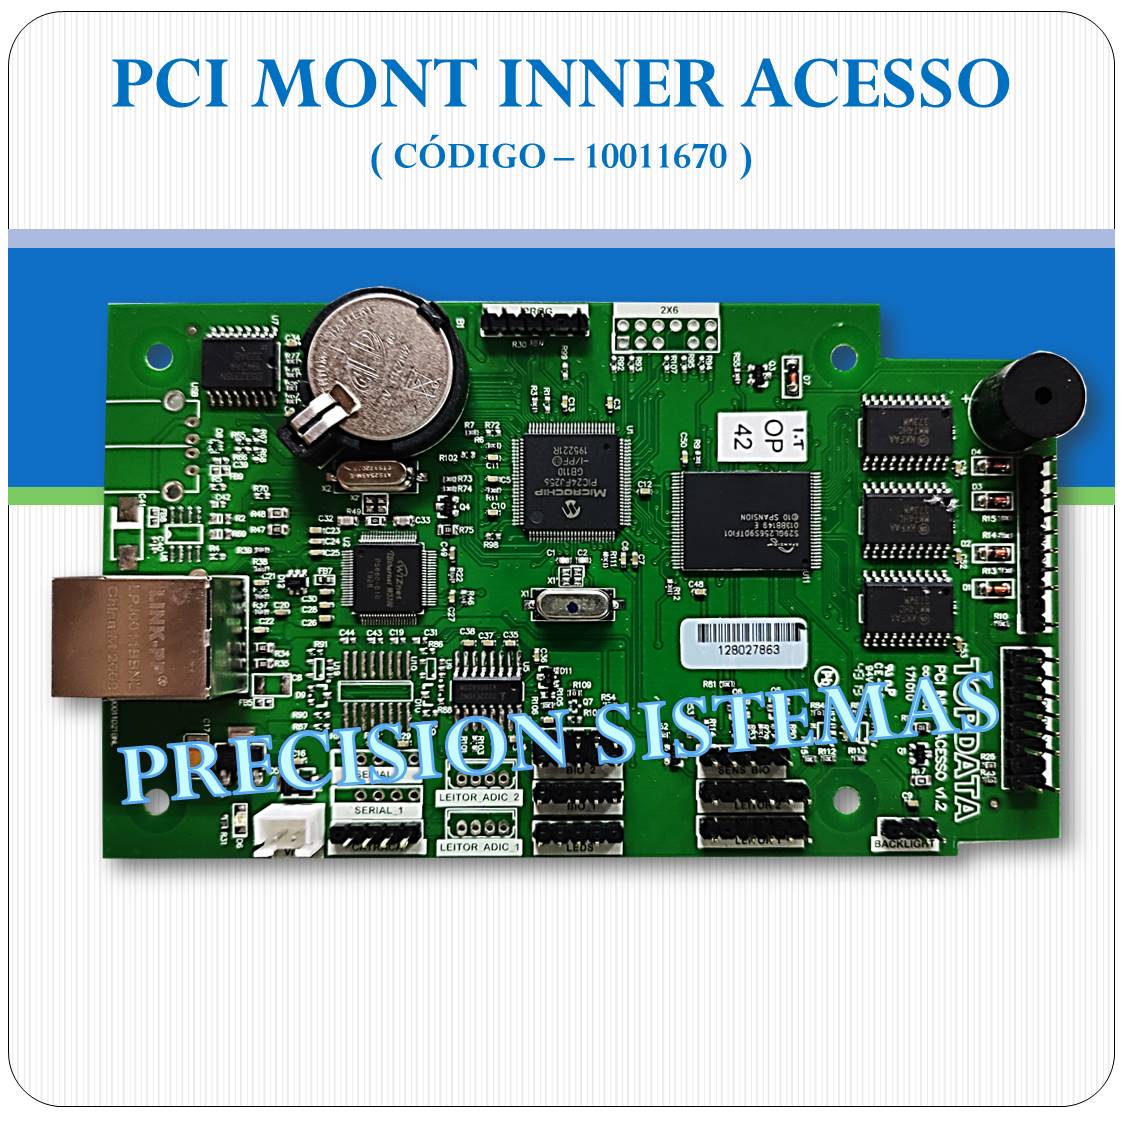 Placa PCI Inner Acesso - Topdata